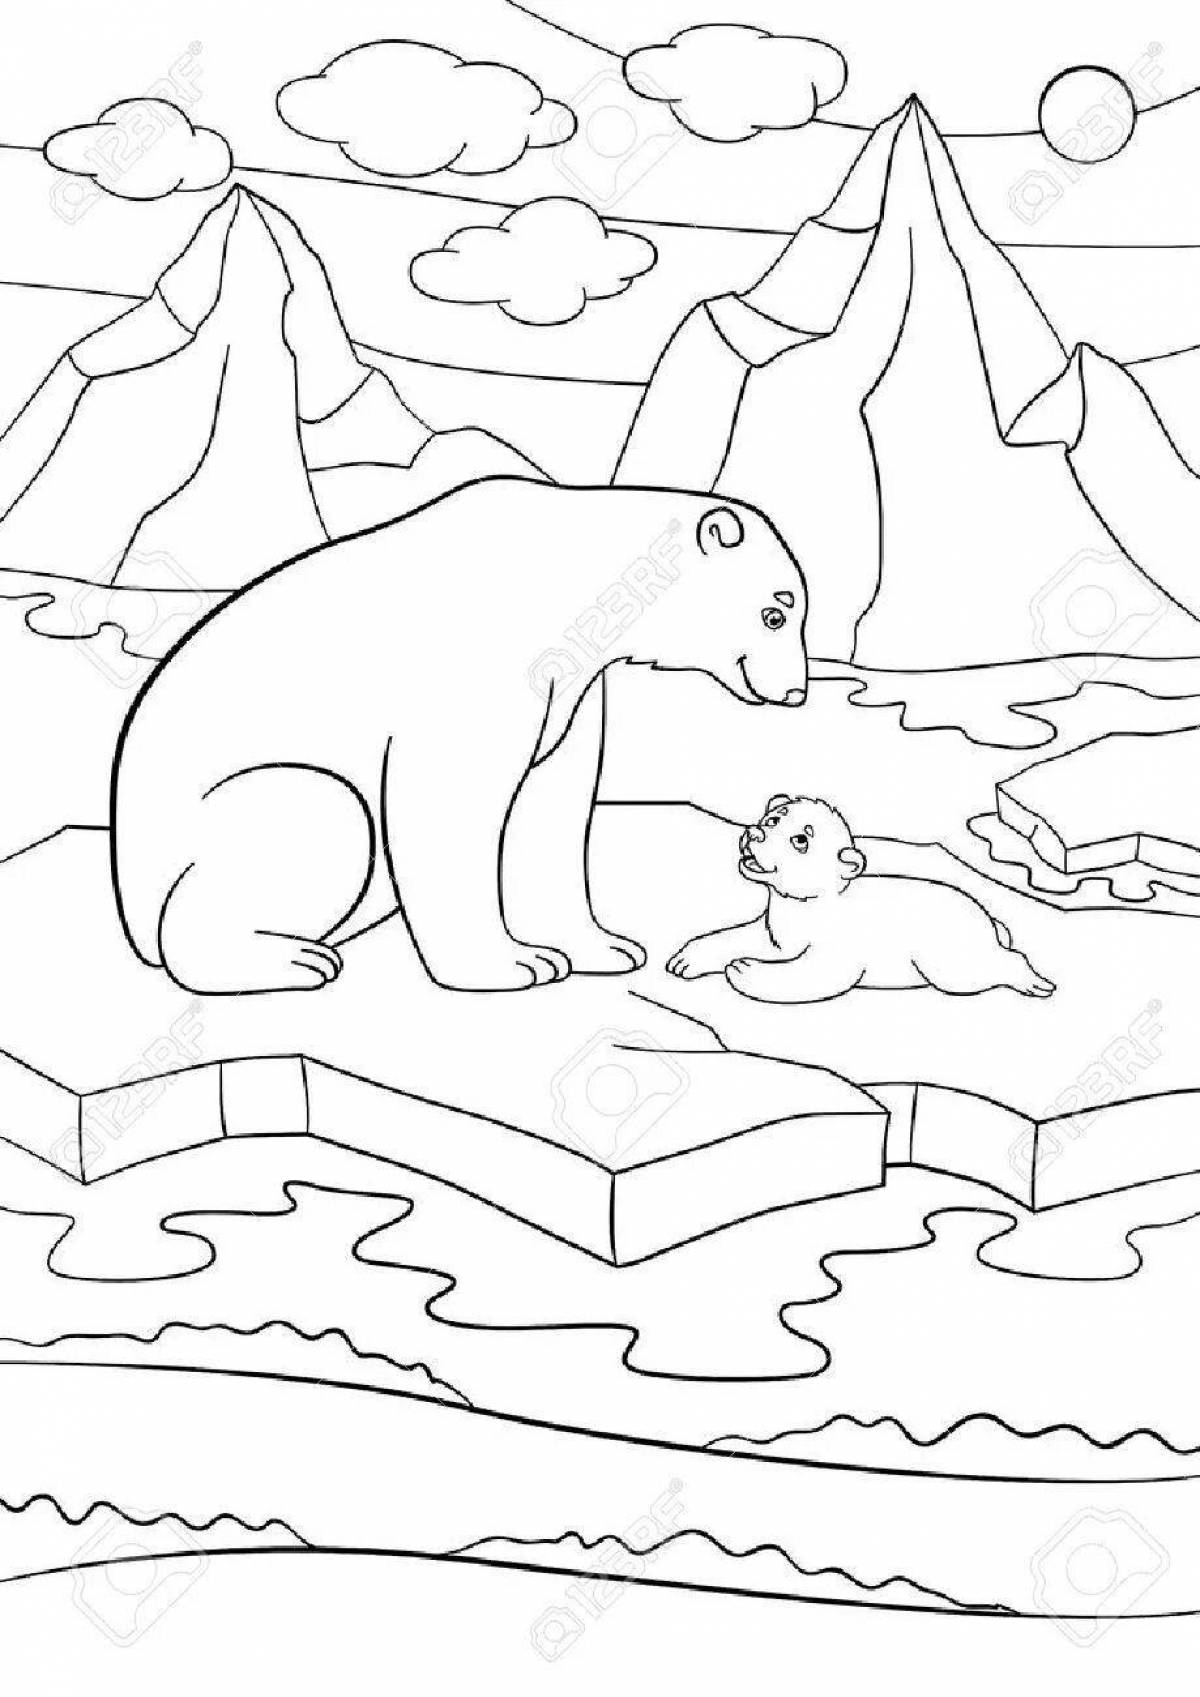 Umka and bear coloring book